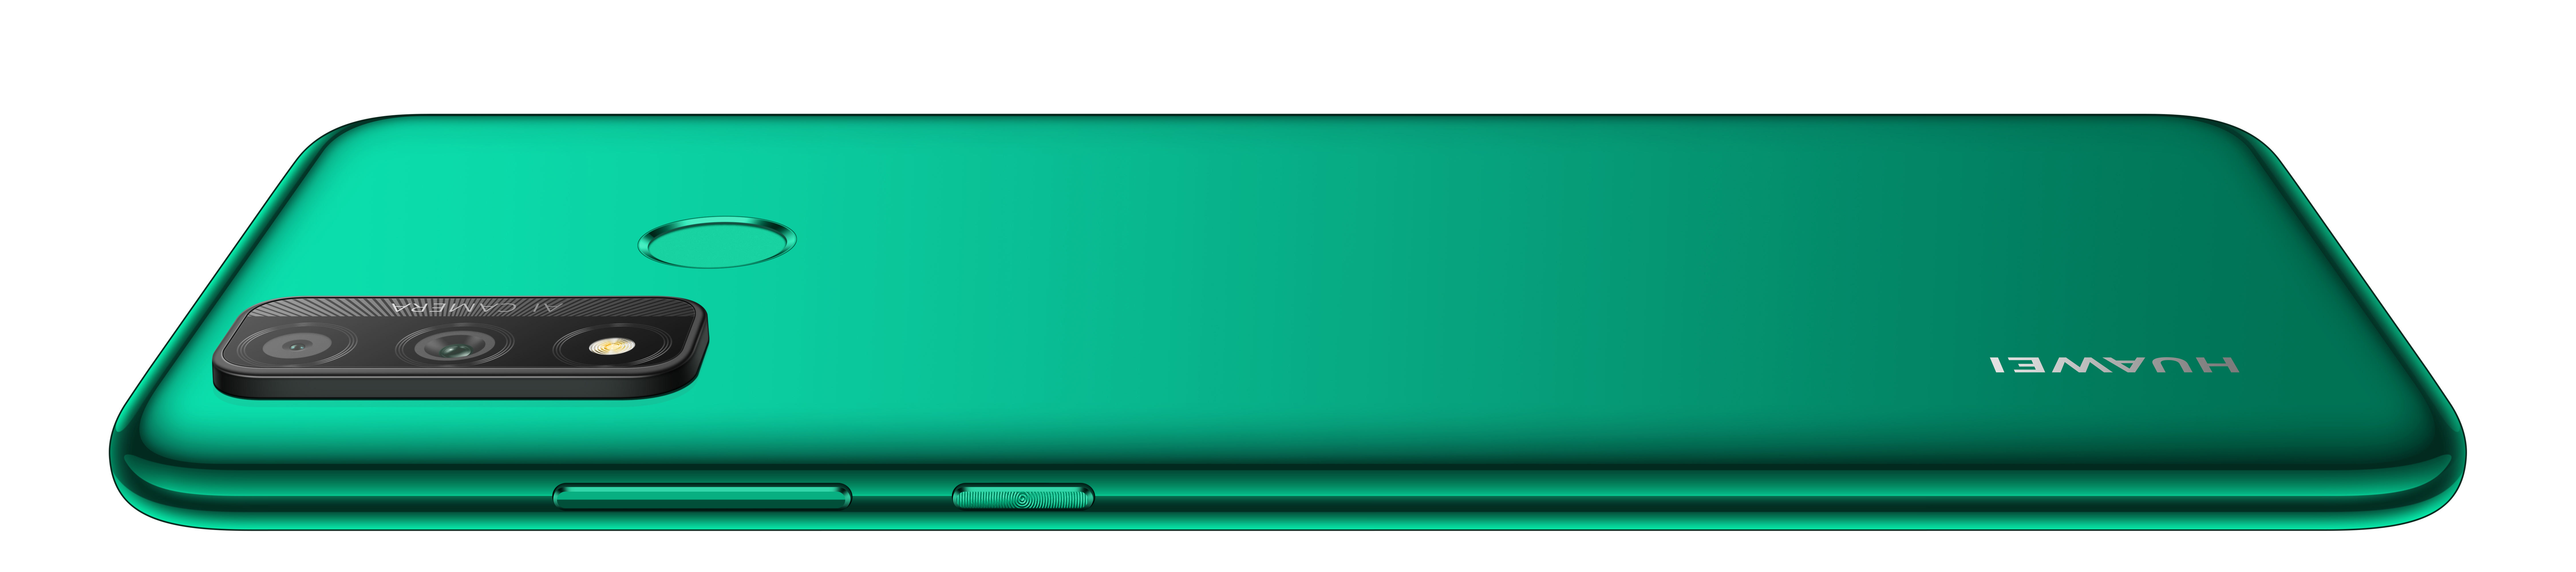 smart 128 Dual Emerald GB Green SIM HUAWEI 2020 P